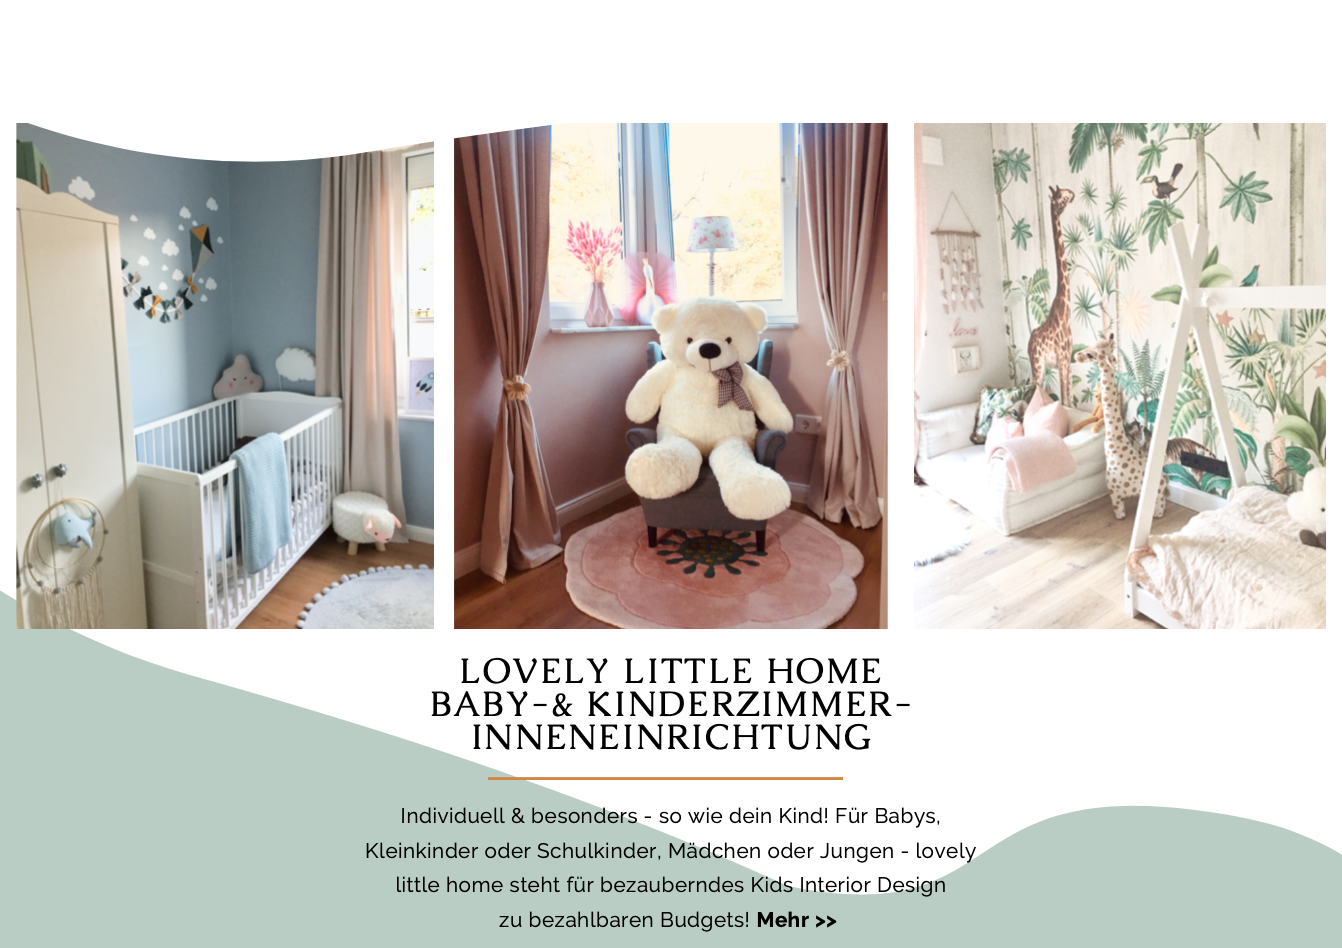 Baby- und Kinderzimmer-Inneneinrichtung! Mit Liebe zum Detail! lovely little home